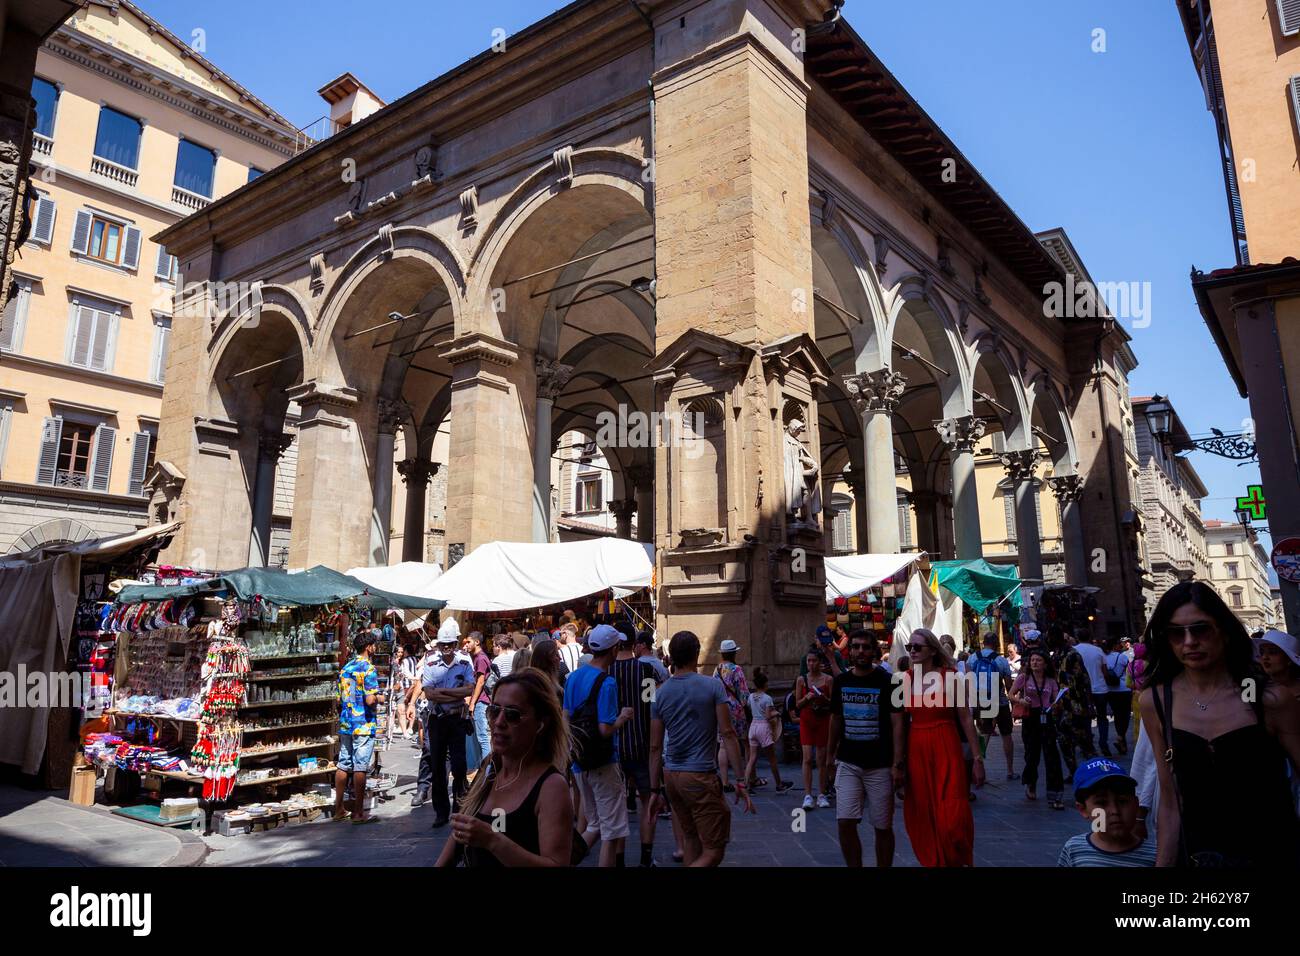 loggia dei lanzi, également appelée loggia della signoria, est un bâtiment à l'angle de la piazza della signoria à florence, italie, à côté de la galerie uffizi. il se compose de larges arches ouvertes à la rue. Banque D'Images